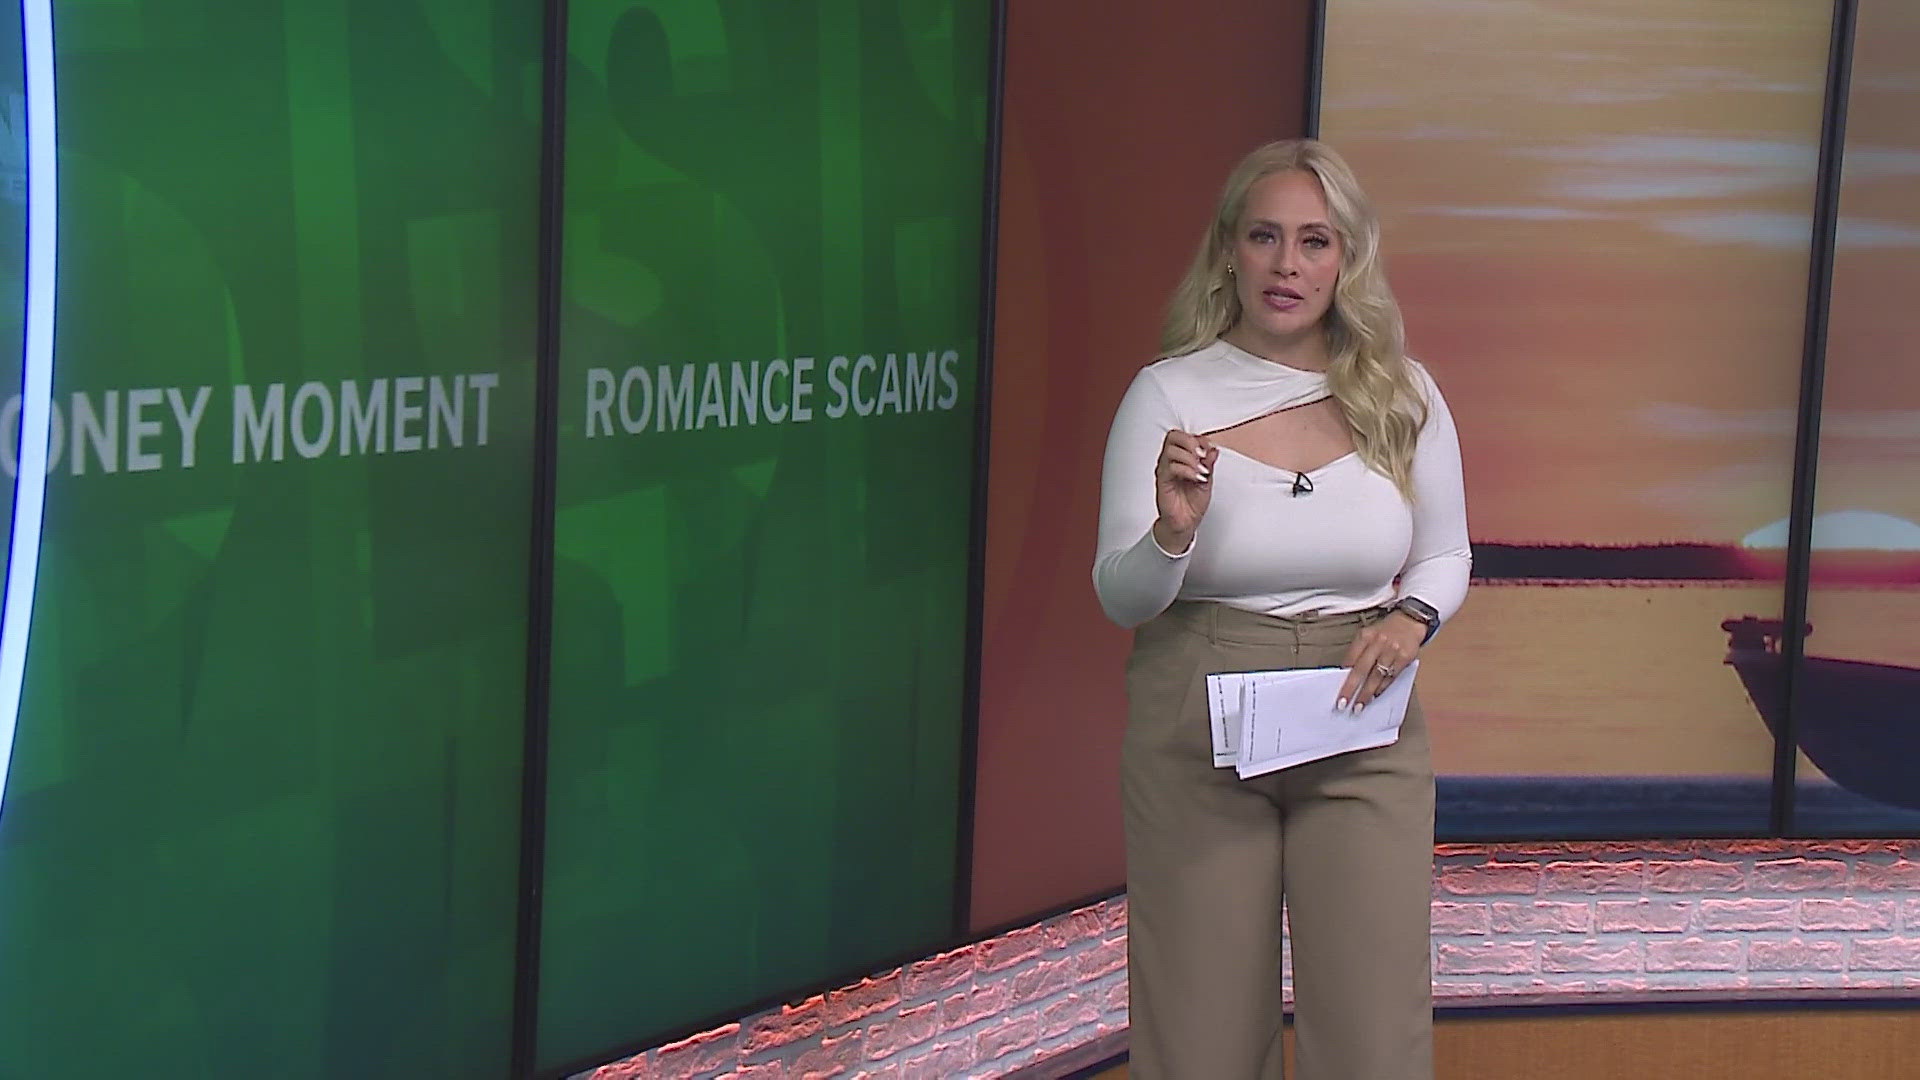 WWL Louisiana's Brheanna Boudreaux talks tips to avoid romance scams and